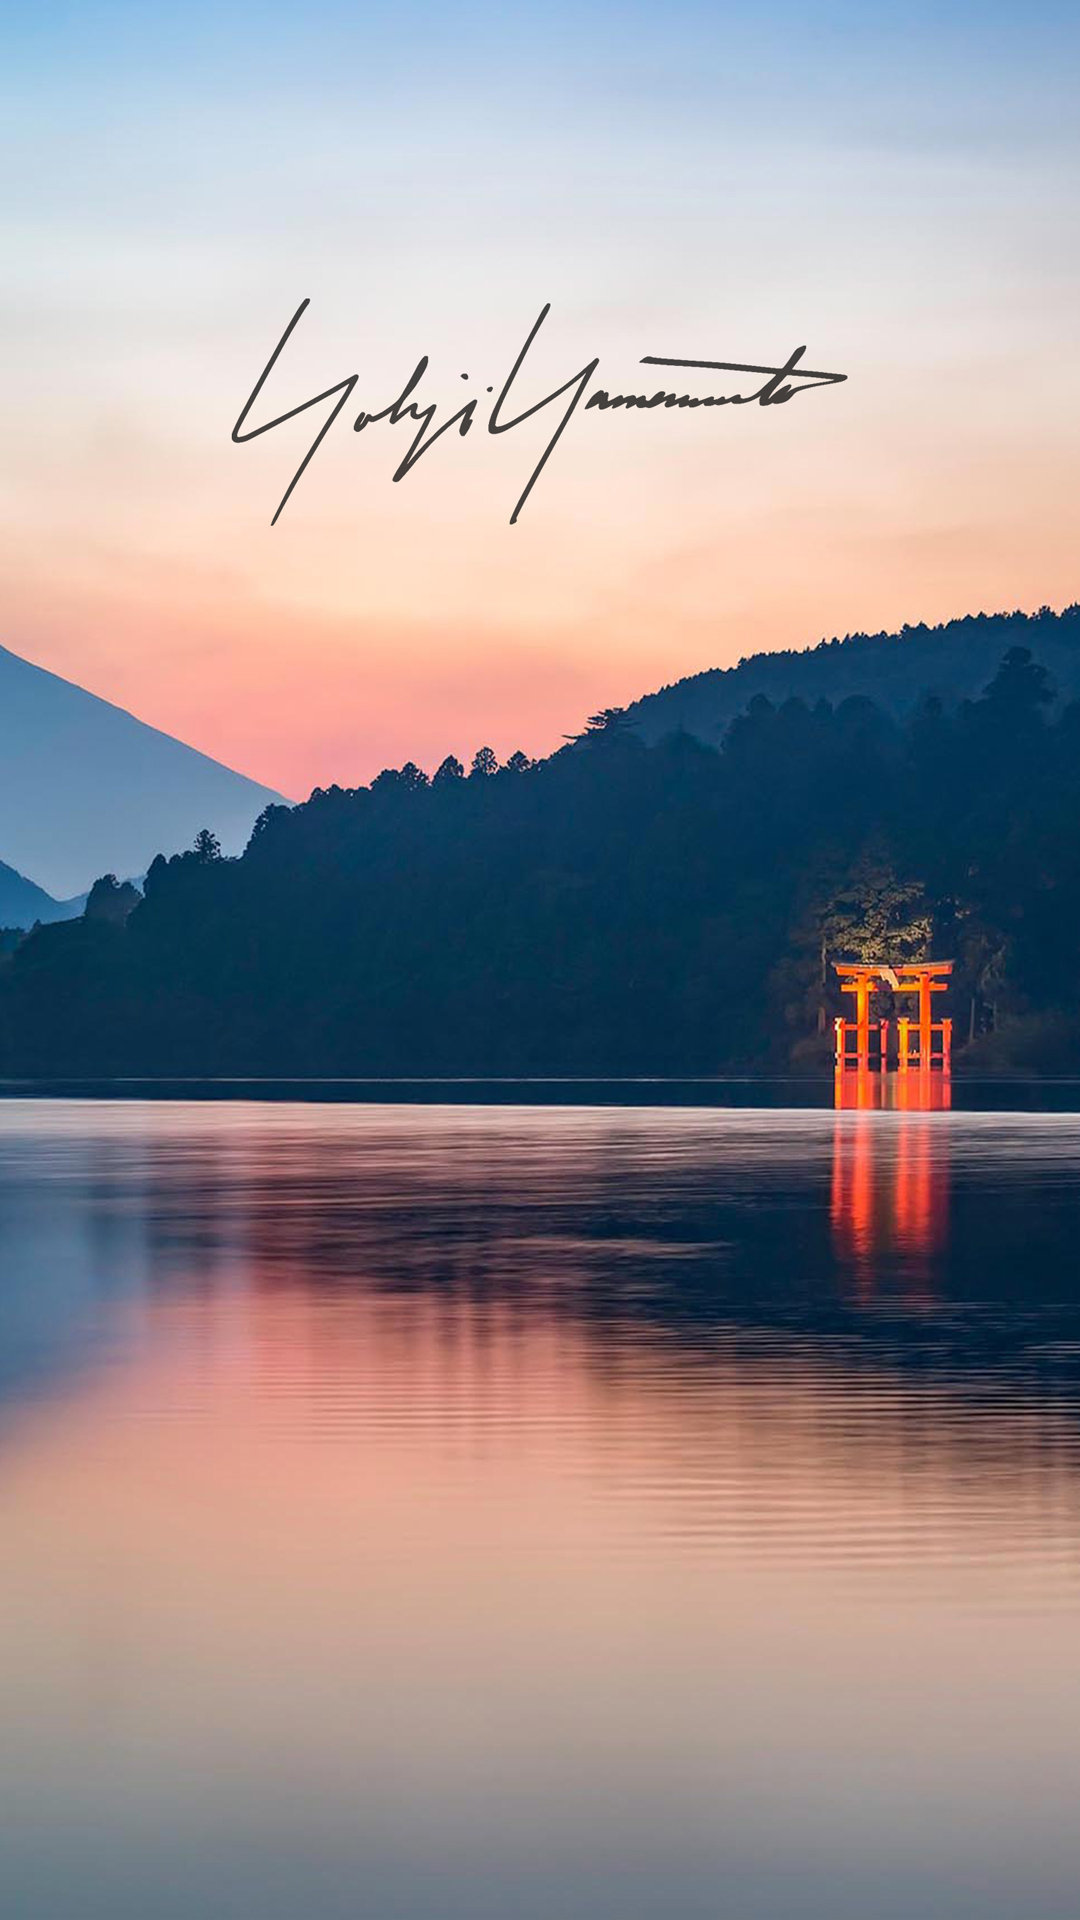 Yohji Yamamoto - Mount Fuji Lake , HD Wallpaper & Backgrounds